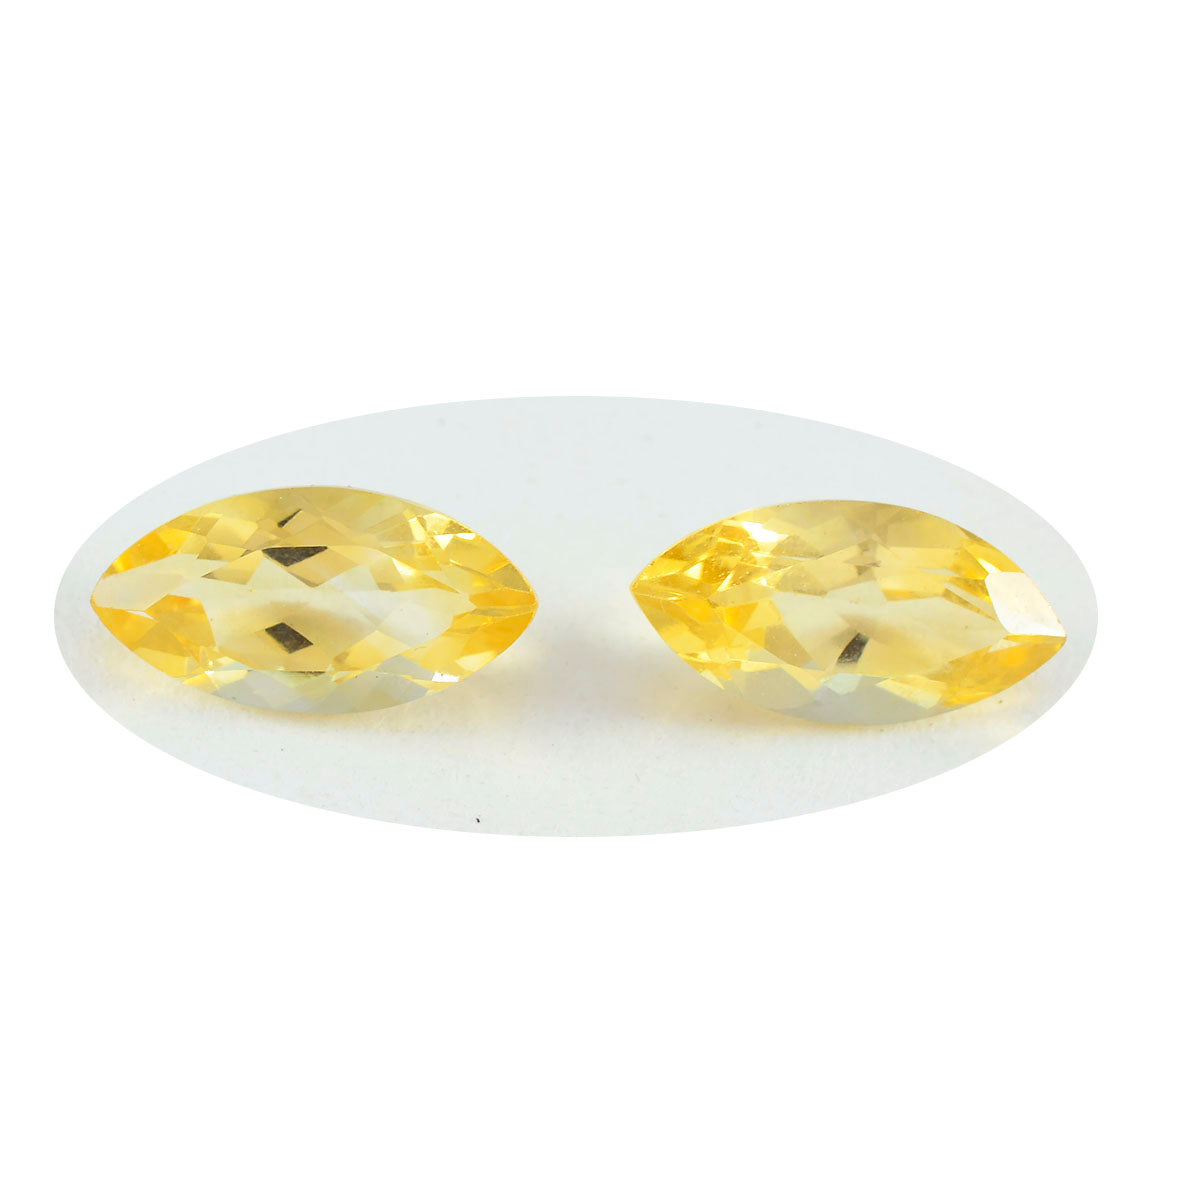 Riyogems 1pc véritable citrine jaune à facettes 8x16mm forme marquise a + 1 pierres précieuses de qualité